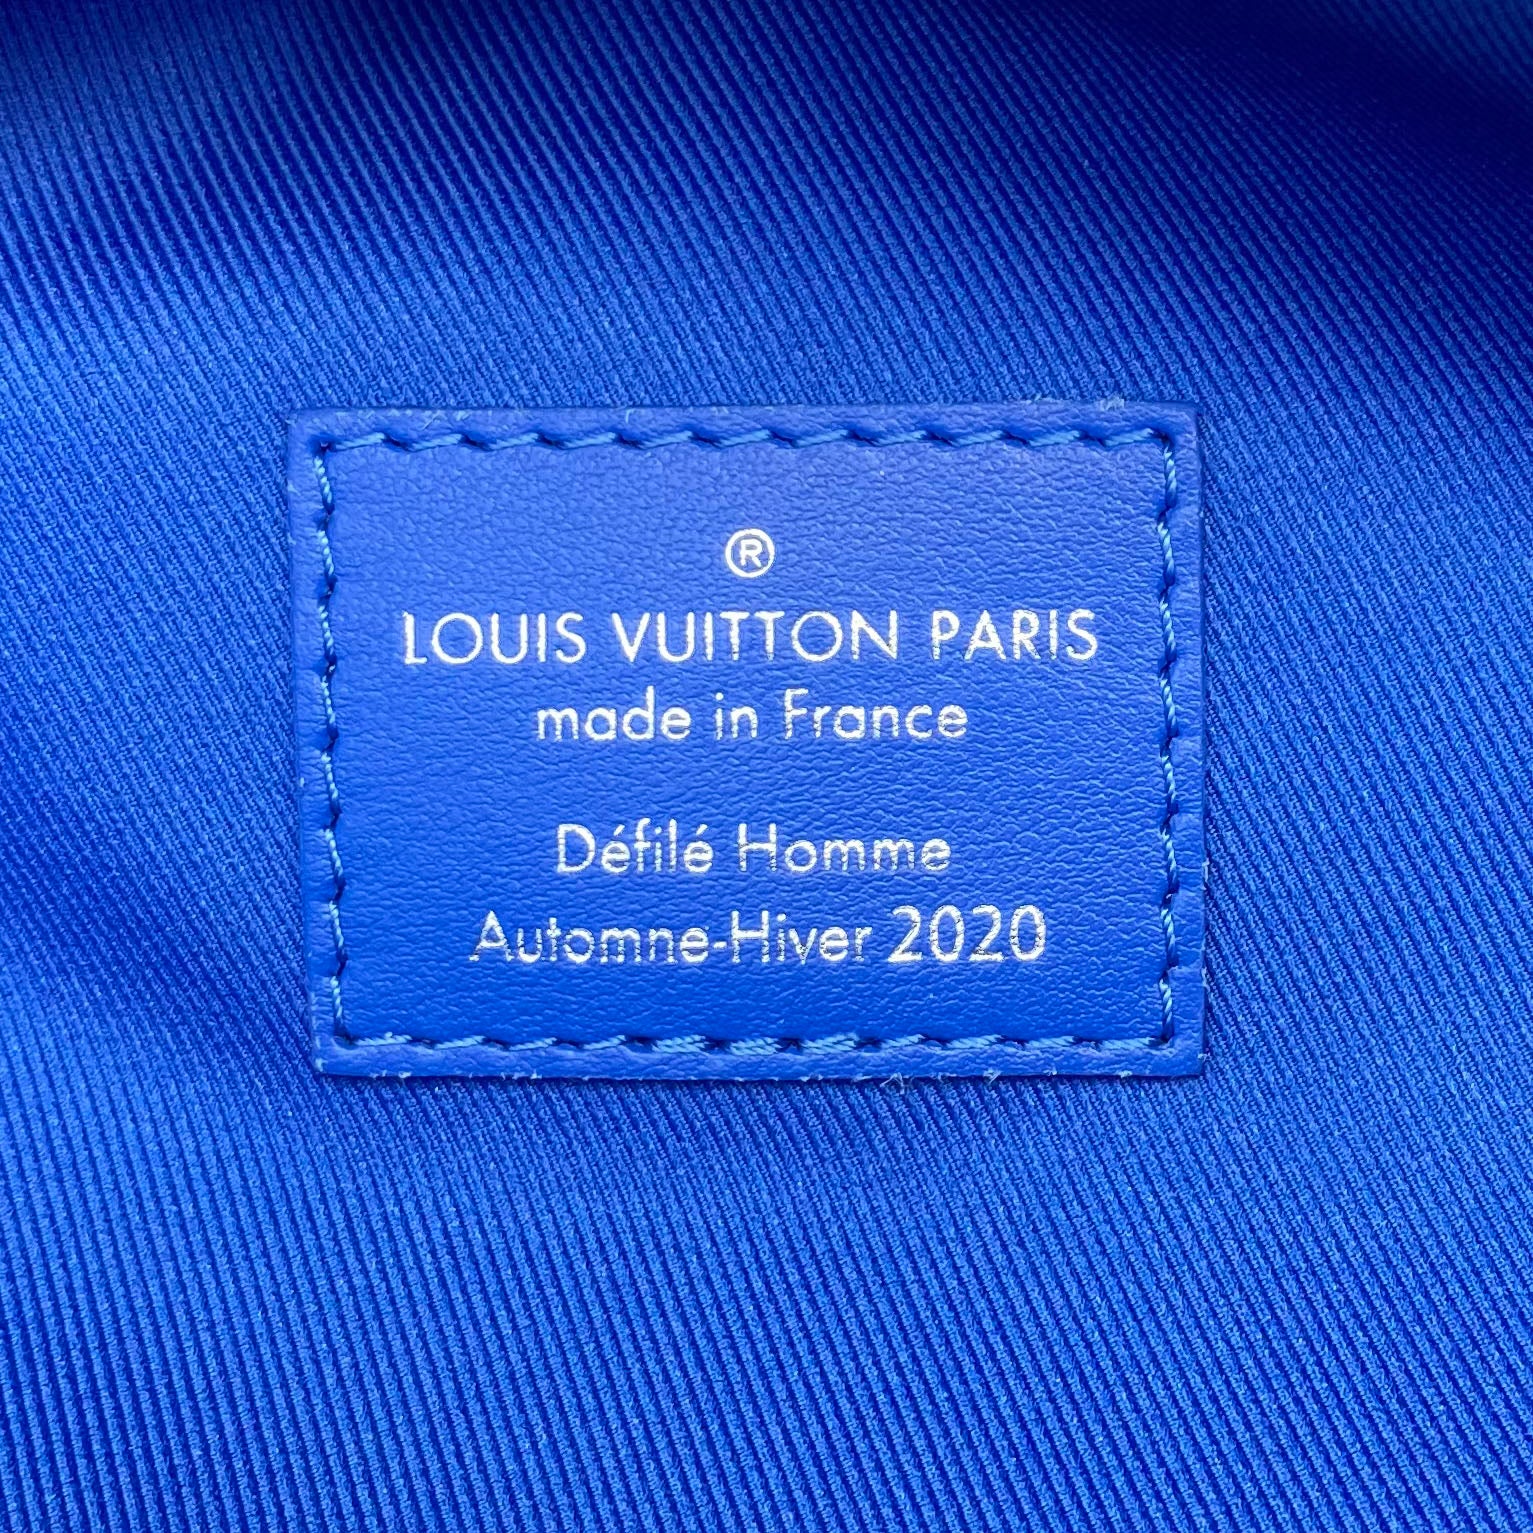 Louis Vuitton Louis Vuitton LV Shape Clouds Monogram Blue